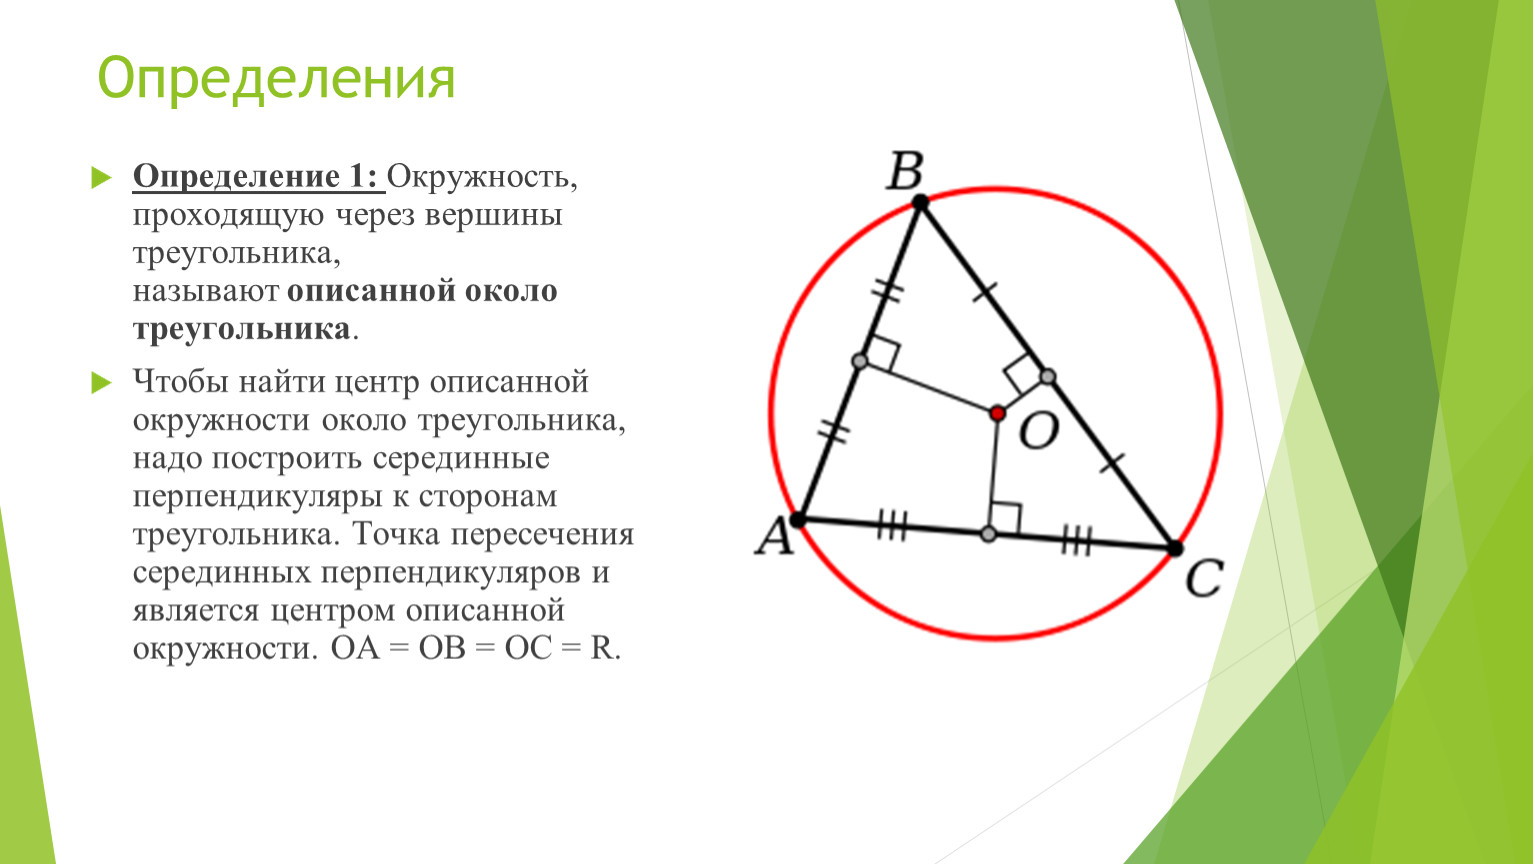 Центр вписанной окружности треугольника лежит в точке. Центр описанной окружности треугольника. Центр вписанной окружности треугольника. Описанная окружность треугольника. Круг вписанный в треугольник.